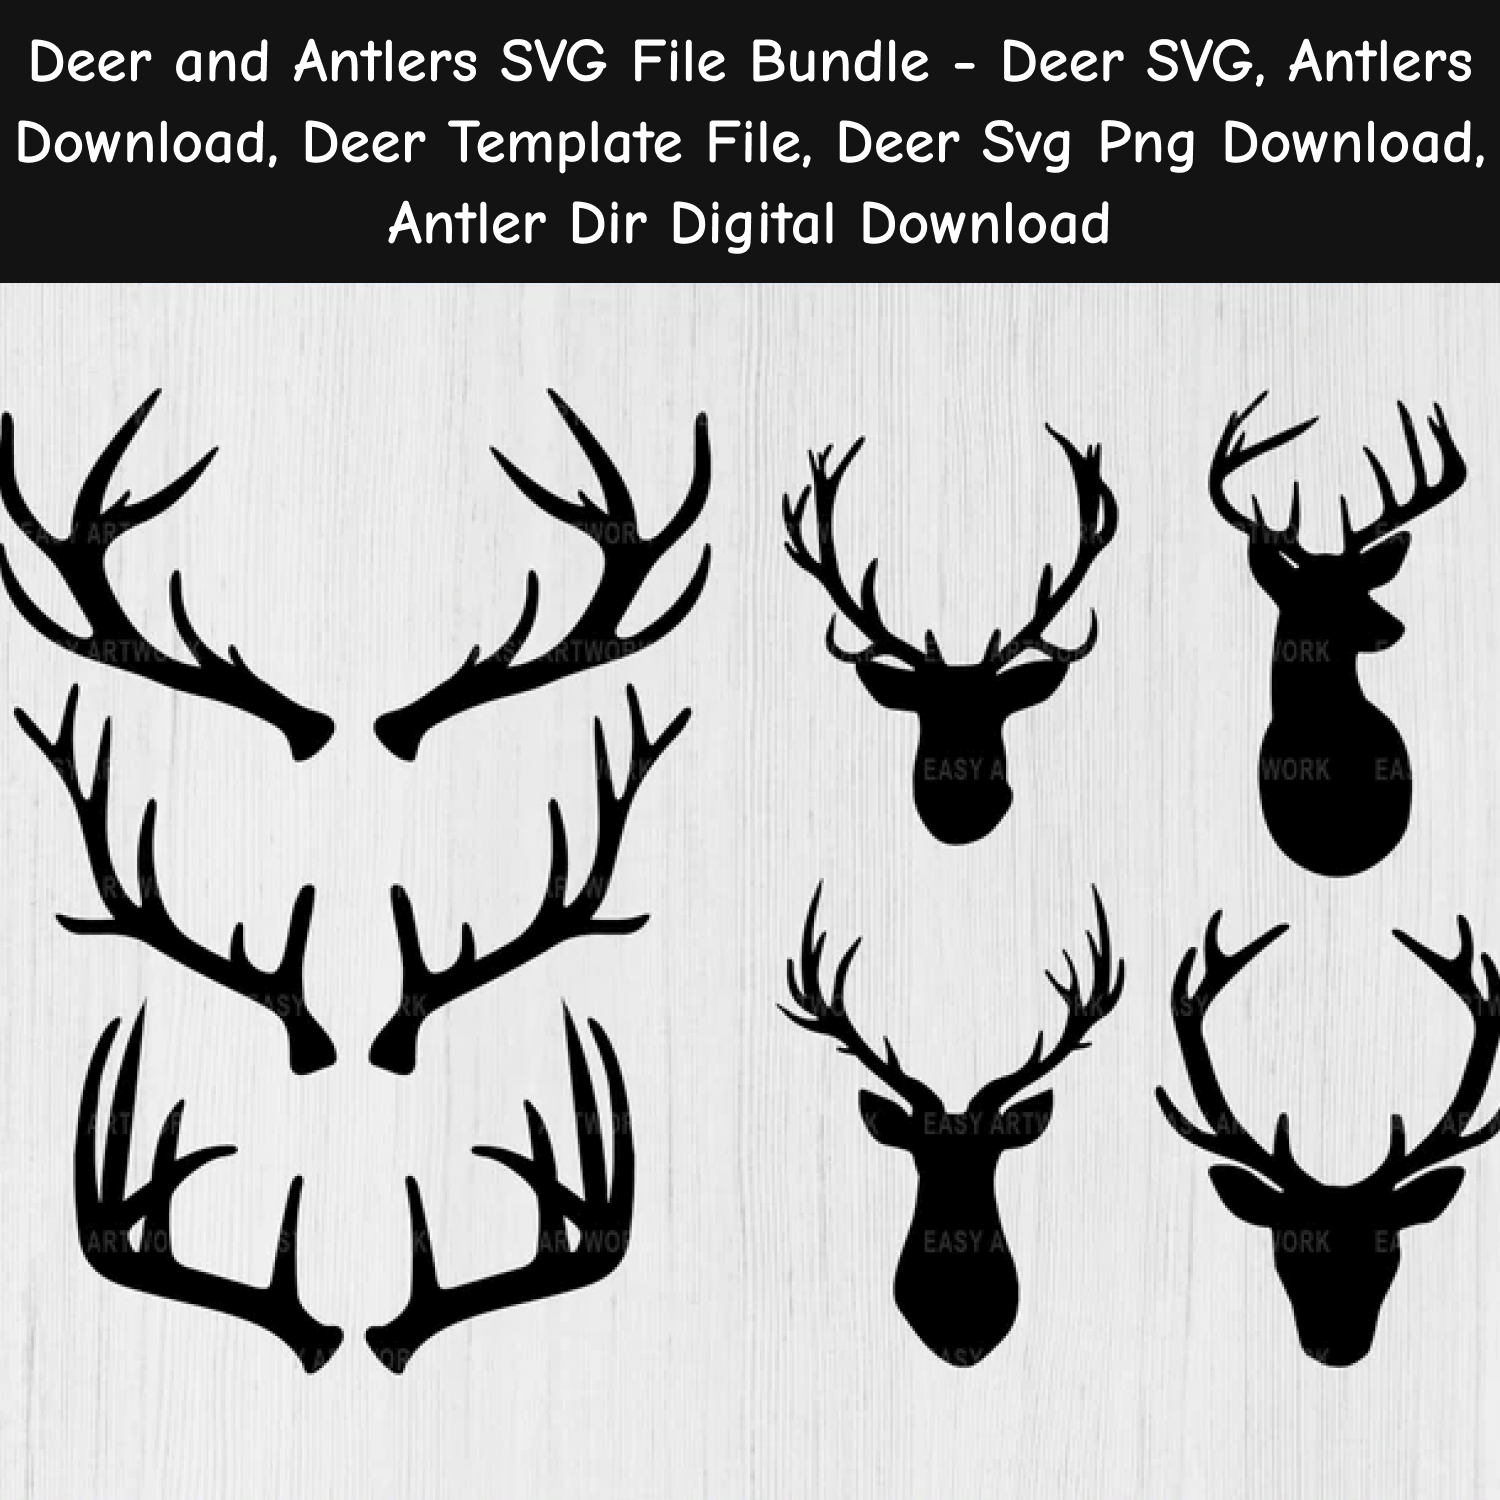 Deer and antlers svg file bundle.